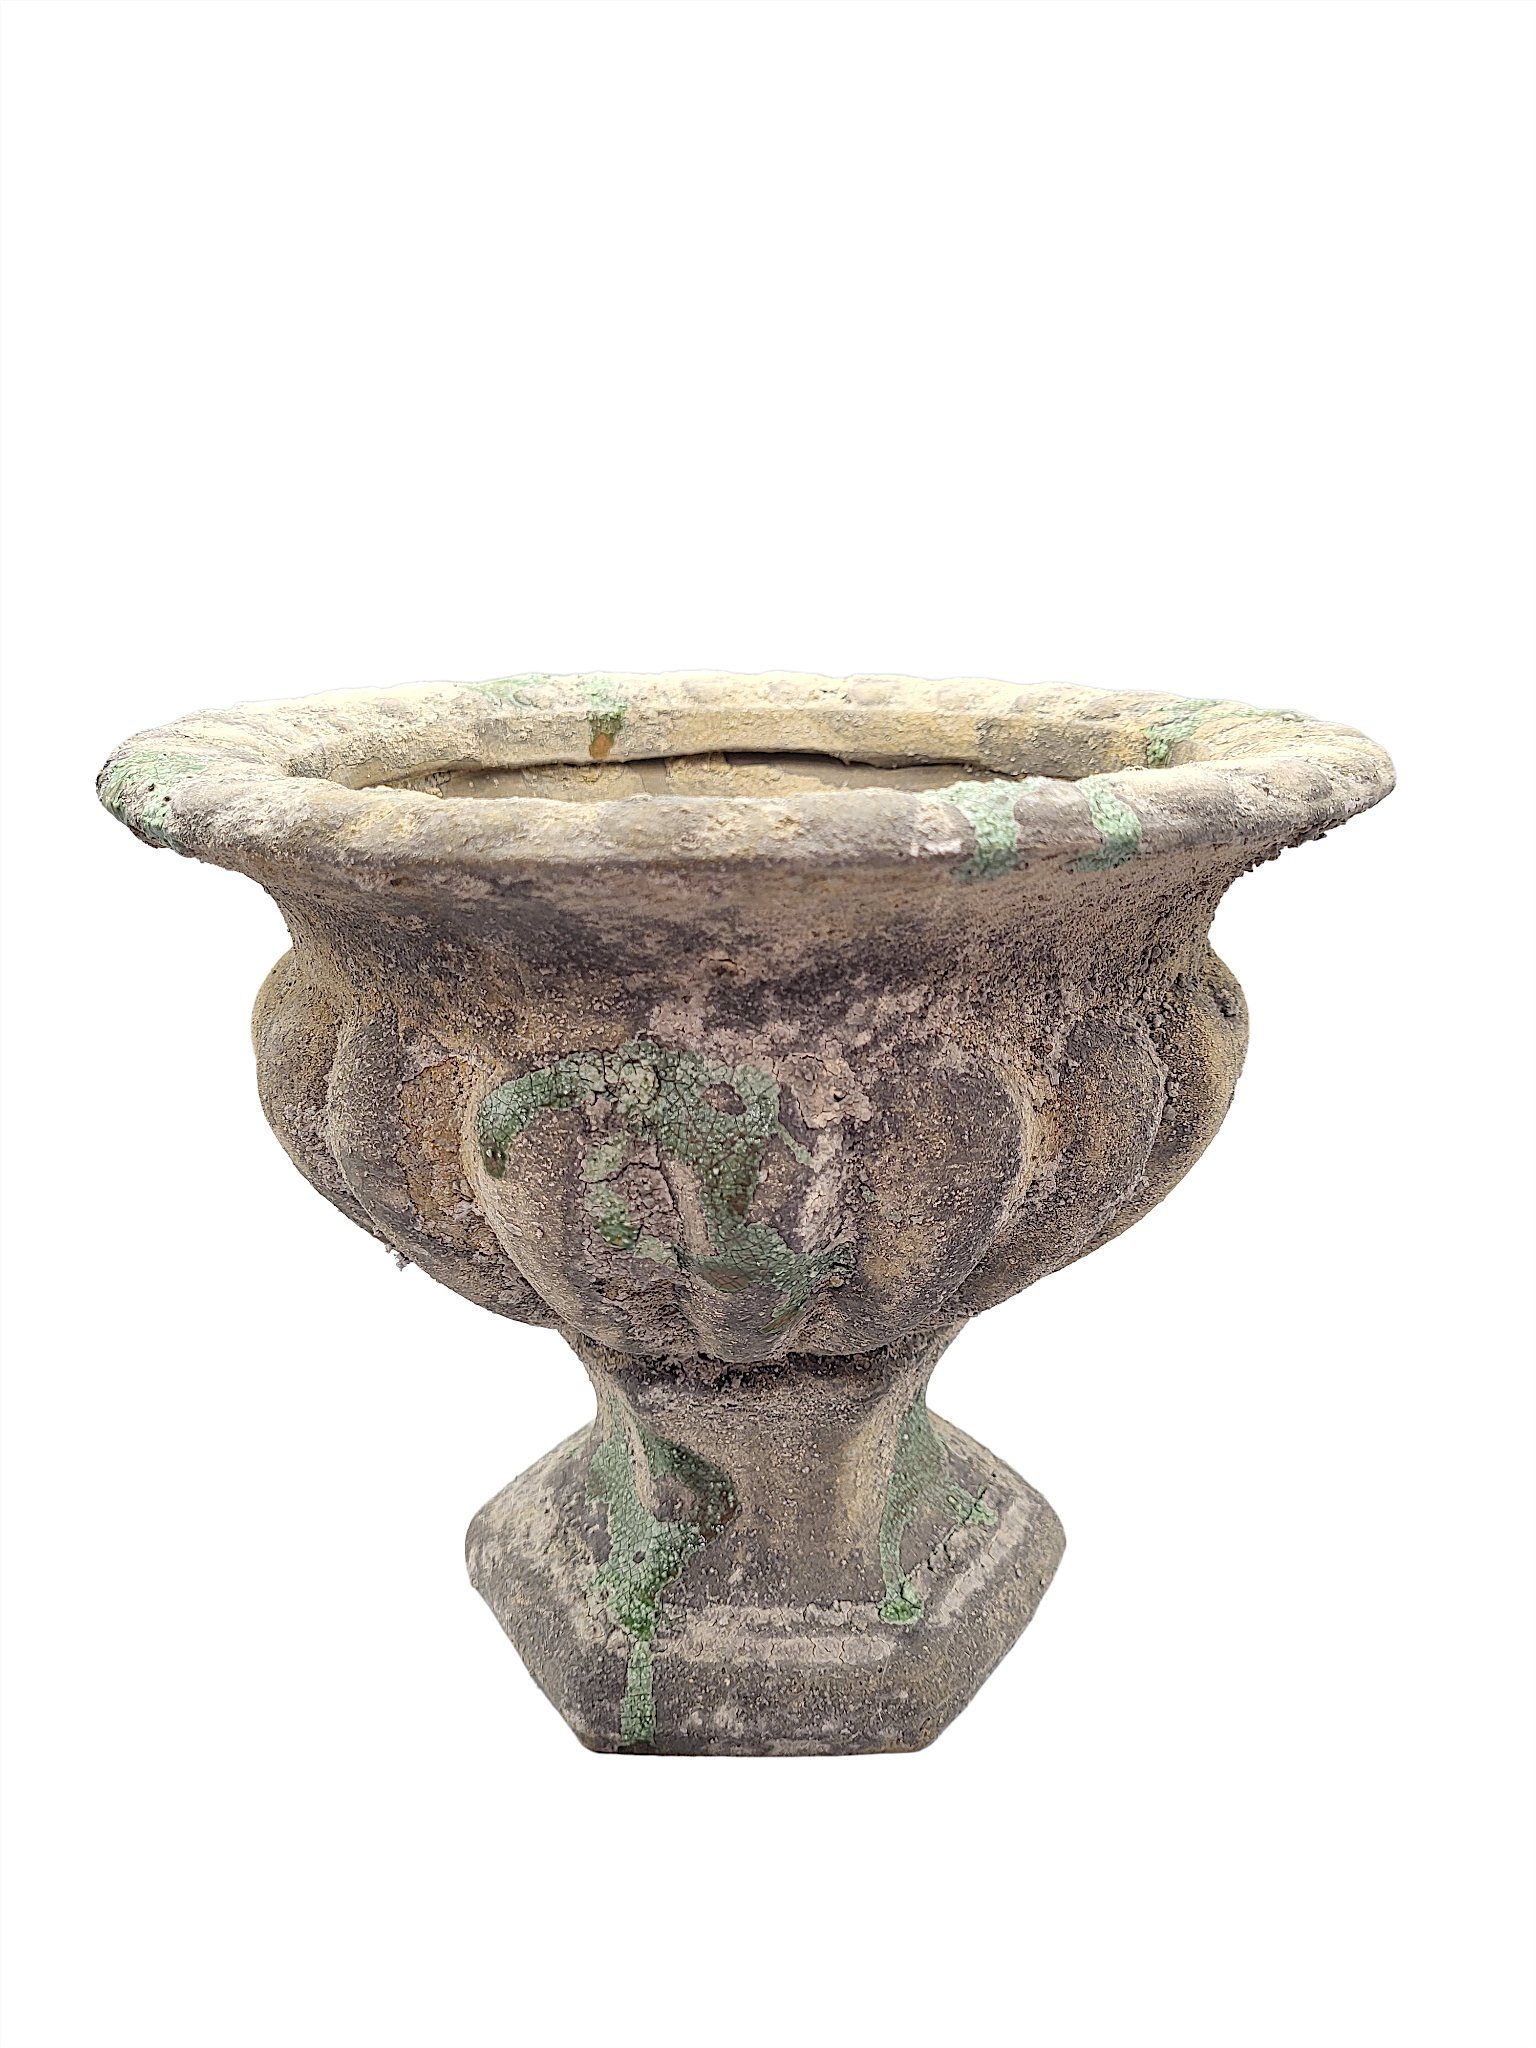 Linoows Pflanzkübel Französische Garten Vase, Barocke Krater Vase, Barocke Amphore aus bemooster Keramik